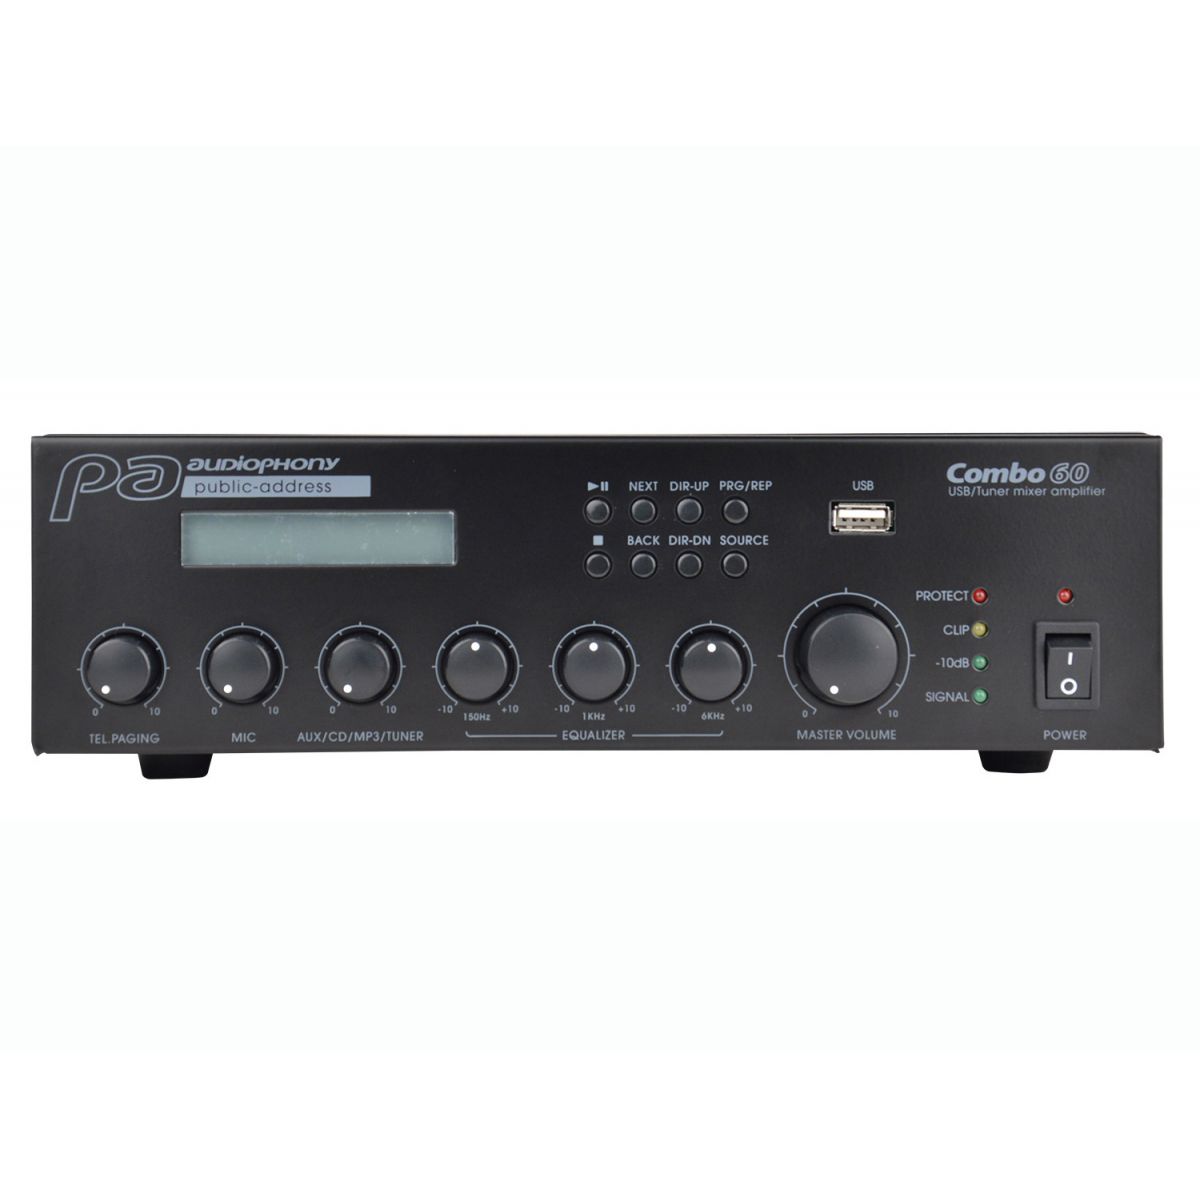 Ampli ligne 100V - Audiophony PA - COMBO60